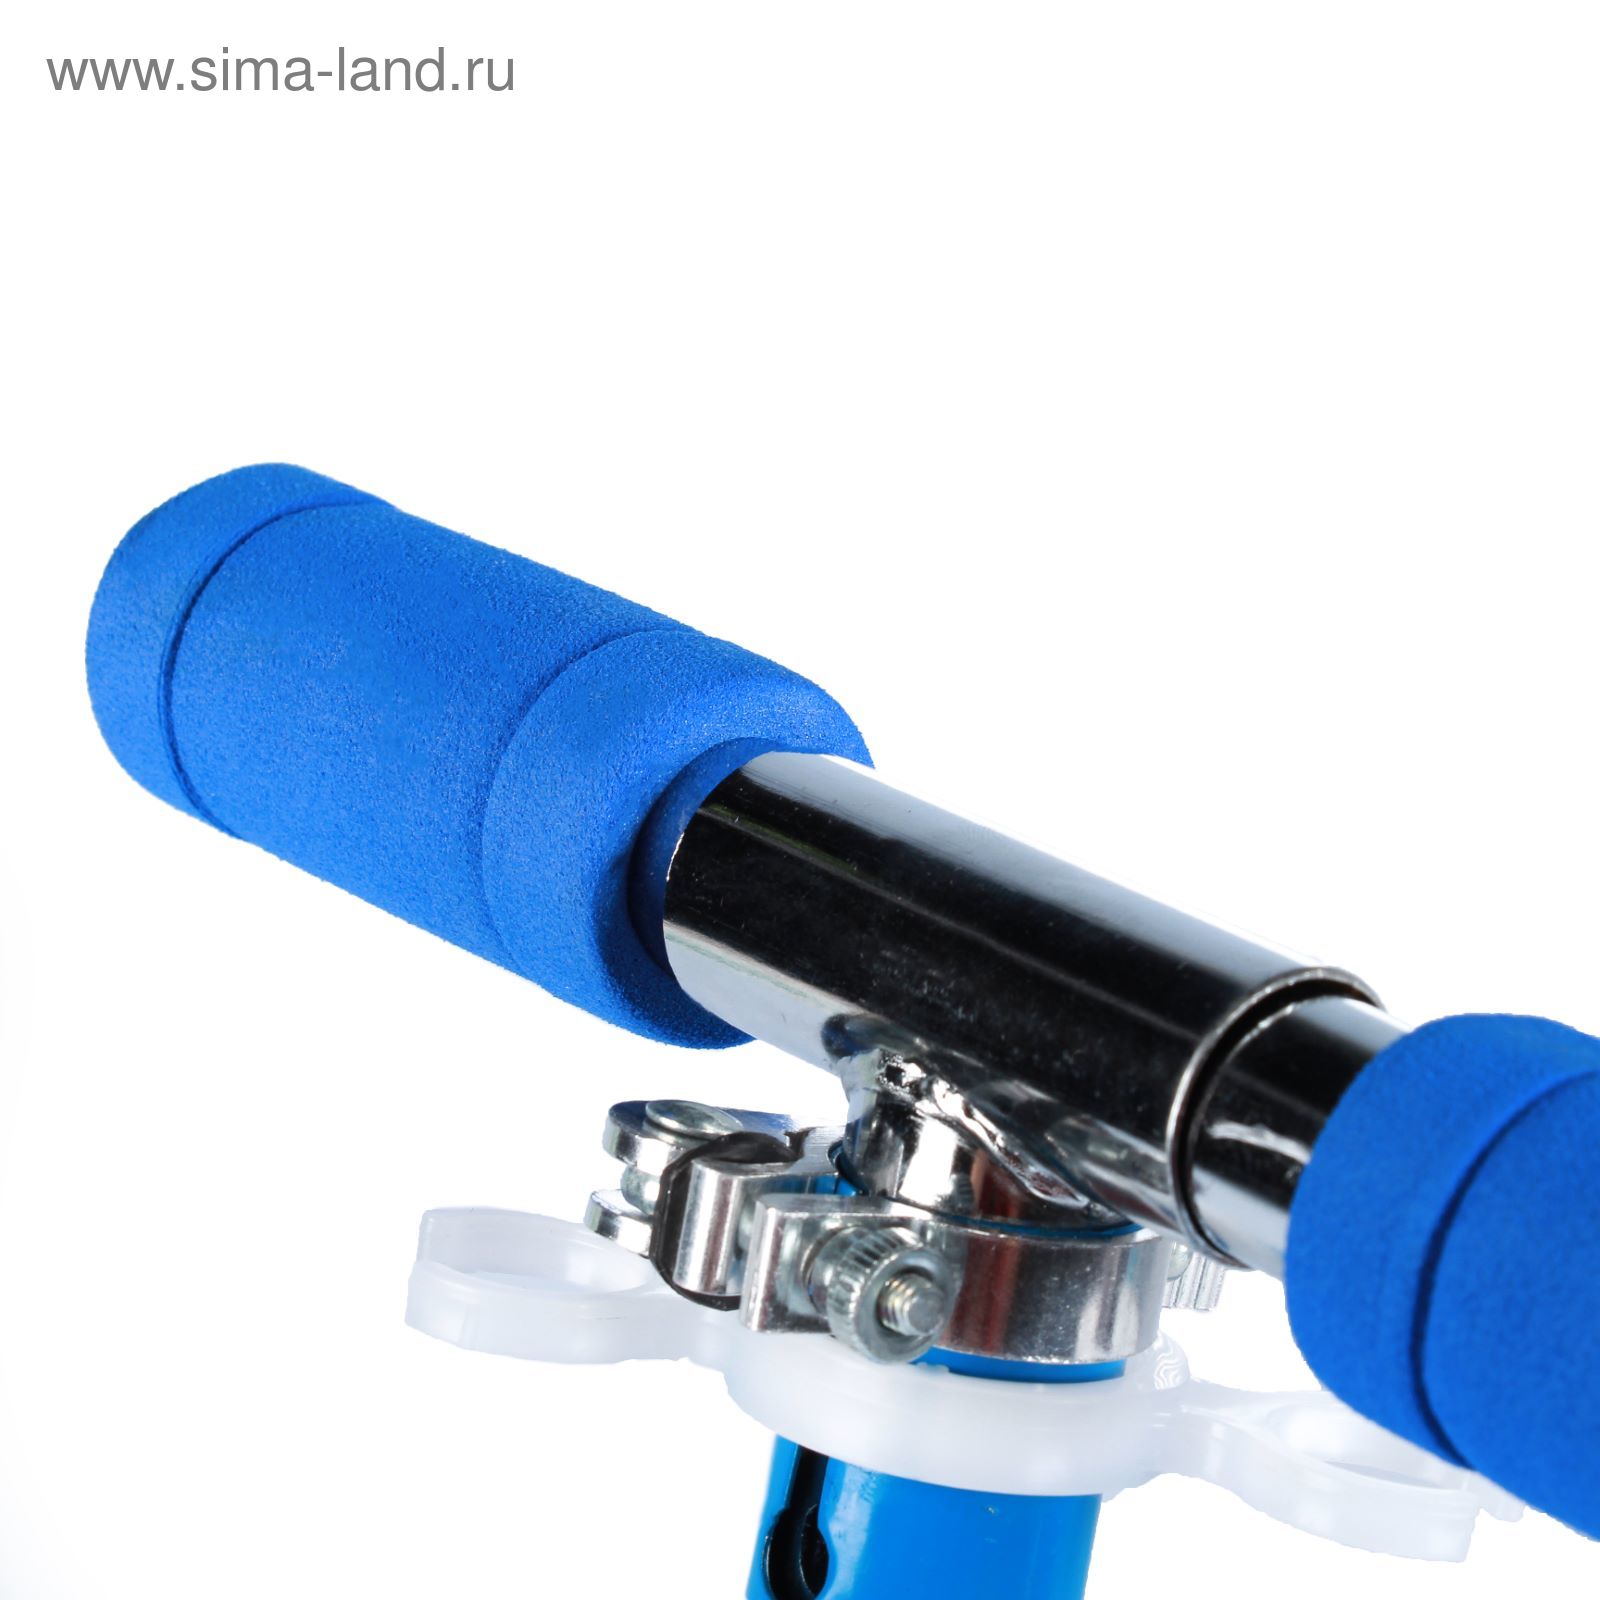 Самокат алюминиевый URBAN ОТ-Н4, три колеса PVC d= 100 мм, цвет синий